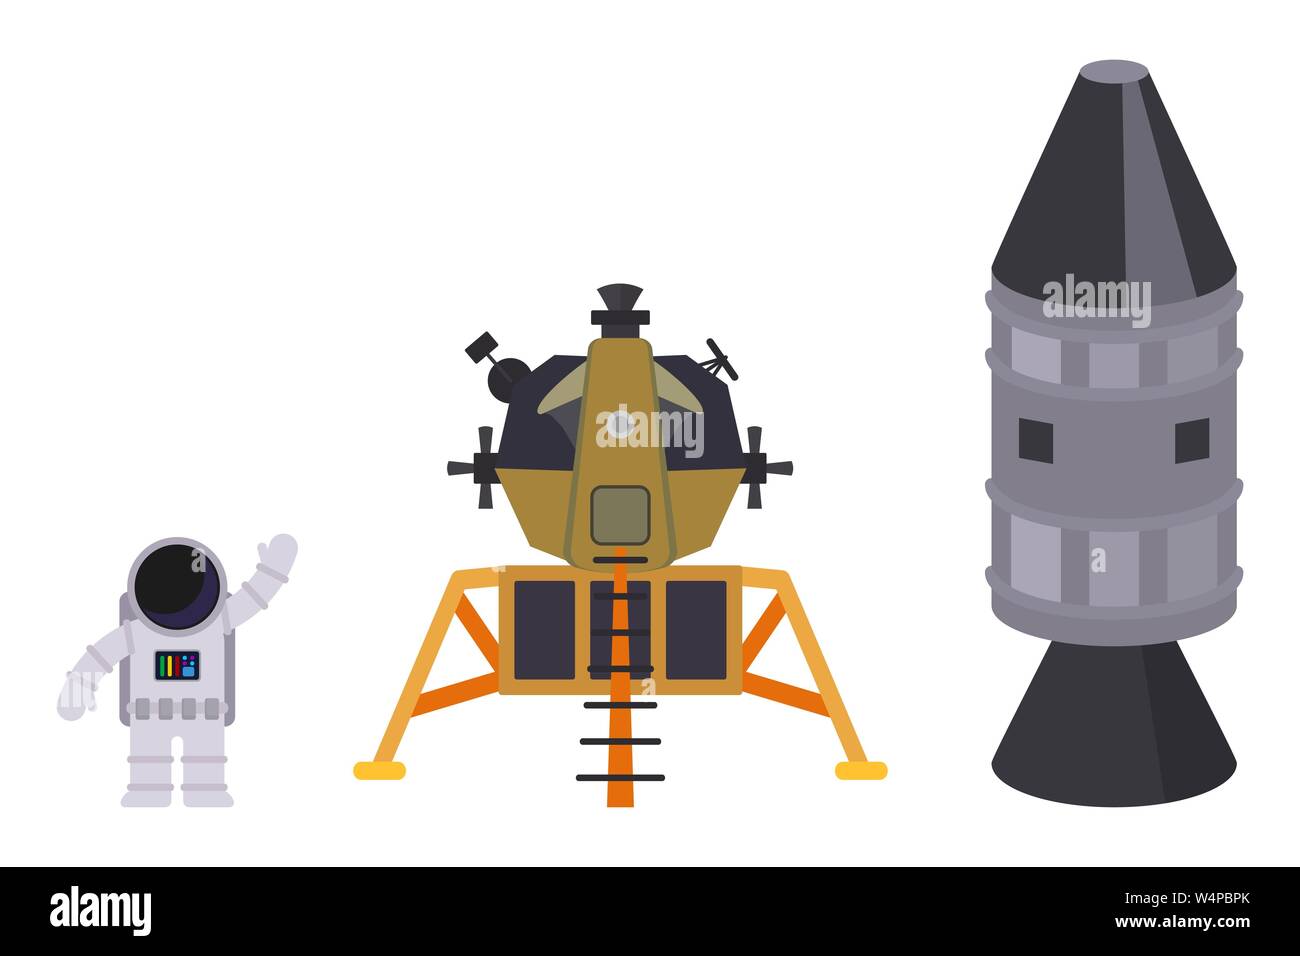 Isolato su sfondo bianco set di oggetti spaziali: astronauta, modulo lunare e rucola. Vettore illustrazione piana. Illustrazione Vettoriale